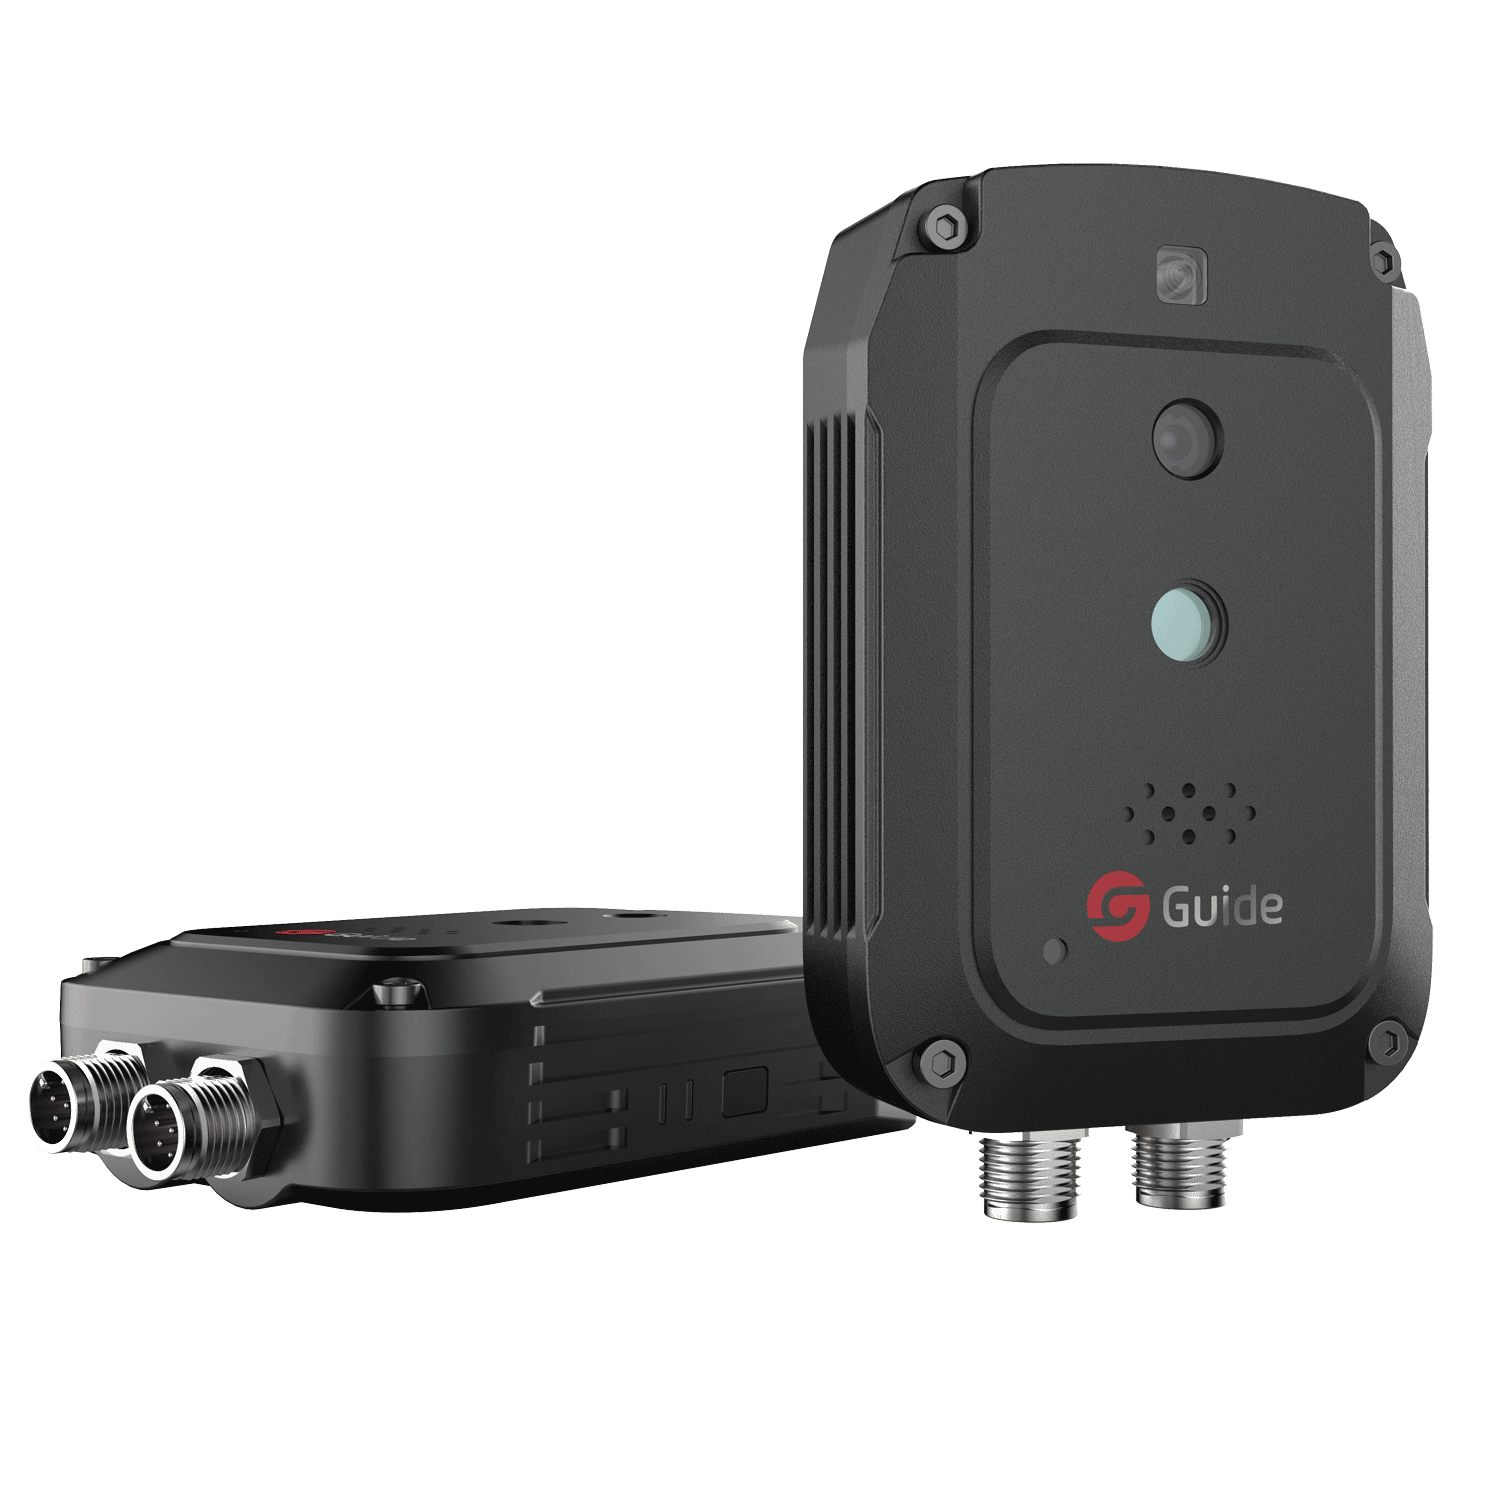 Guide Sensmart 2300976 IR510N1 Nano 2300976-Videocamera Termica 3,6 2 /& 4 x Digitale 19 mm